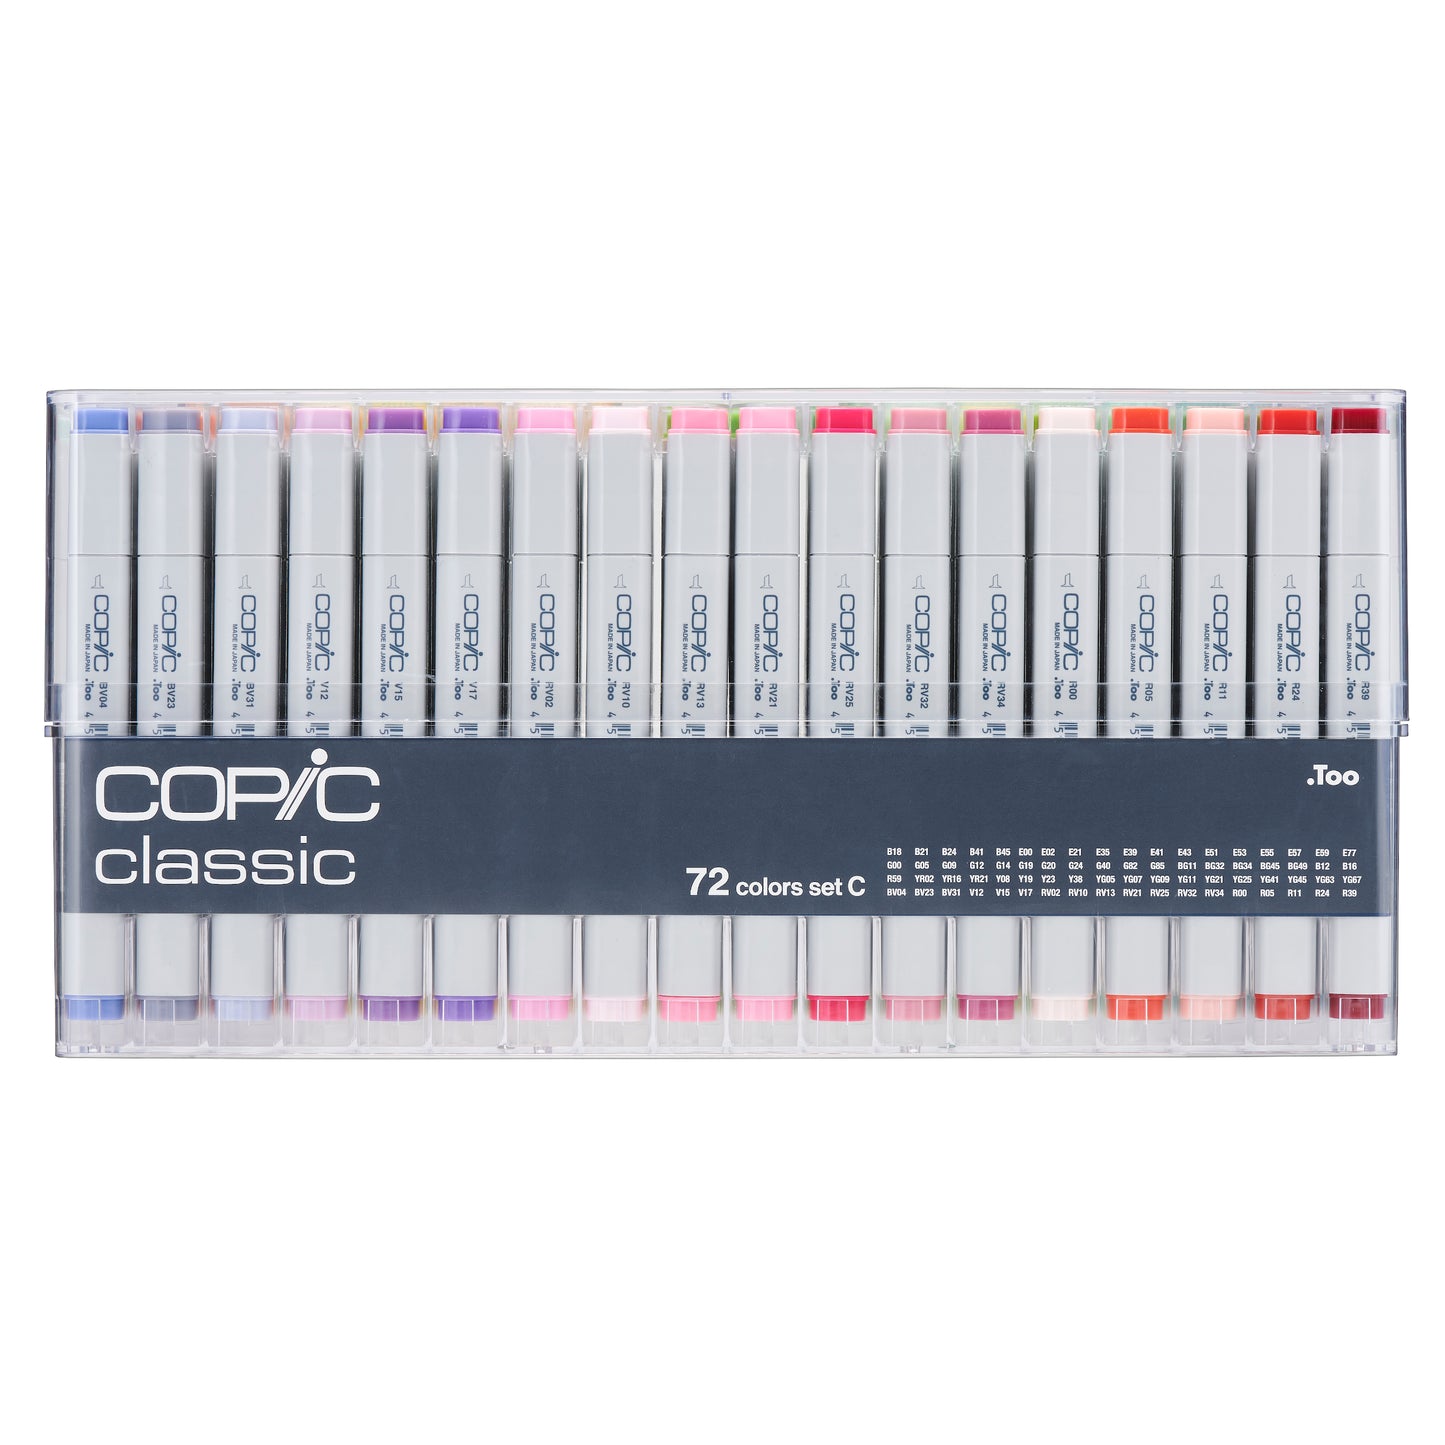 Copic Classic 72 Set C